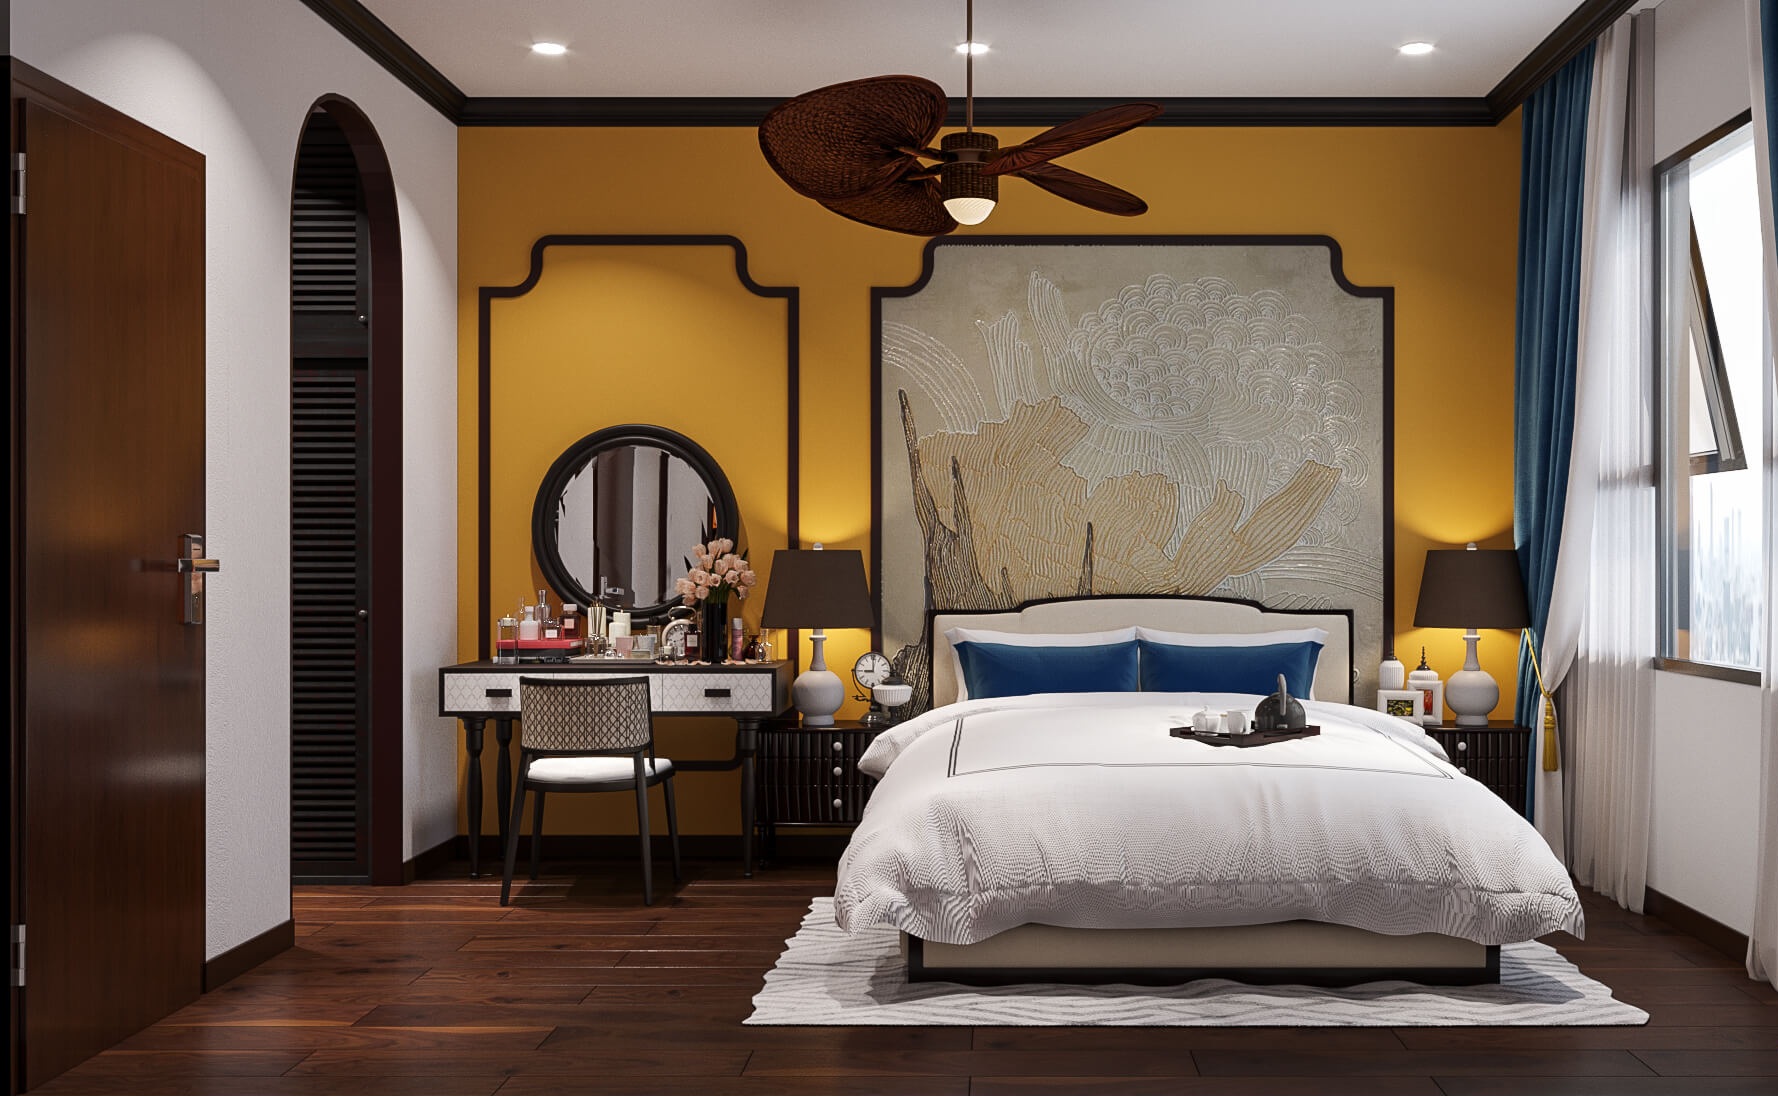 Thiết kế nội thất phòng ngủ sang trọng và ấn tượng, mang đậm phong cách Á Đông